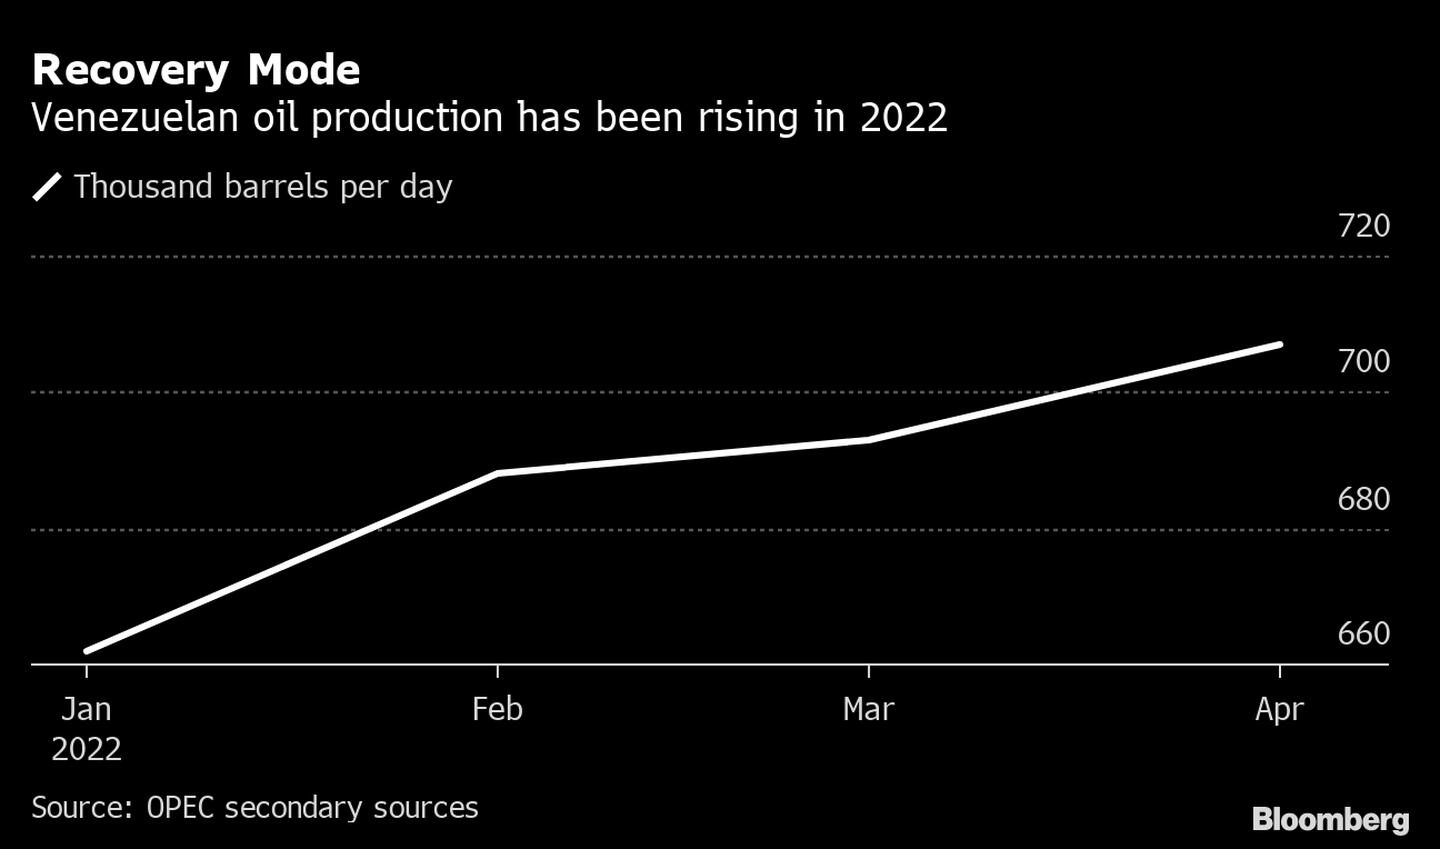 La producción de petróleo de Venezuela va al alza en 2022. dfd